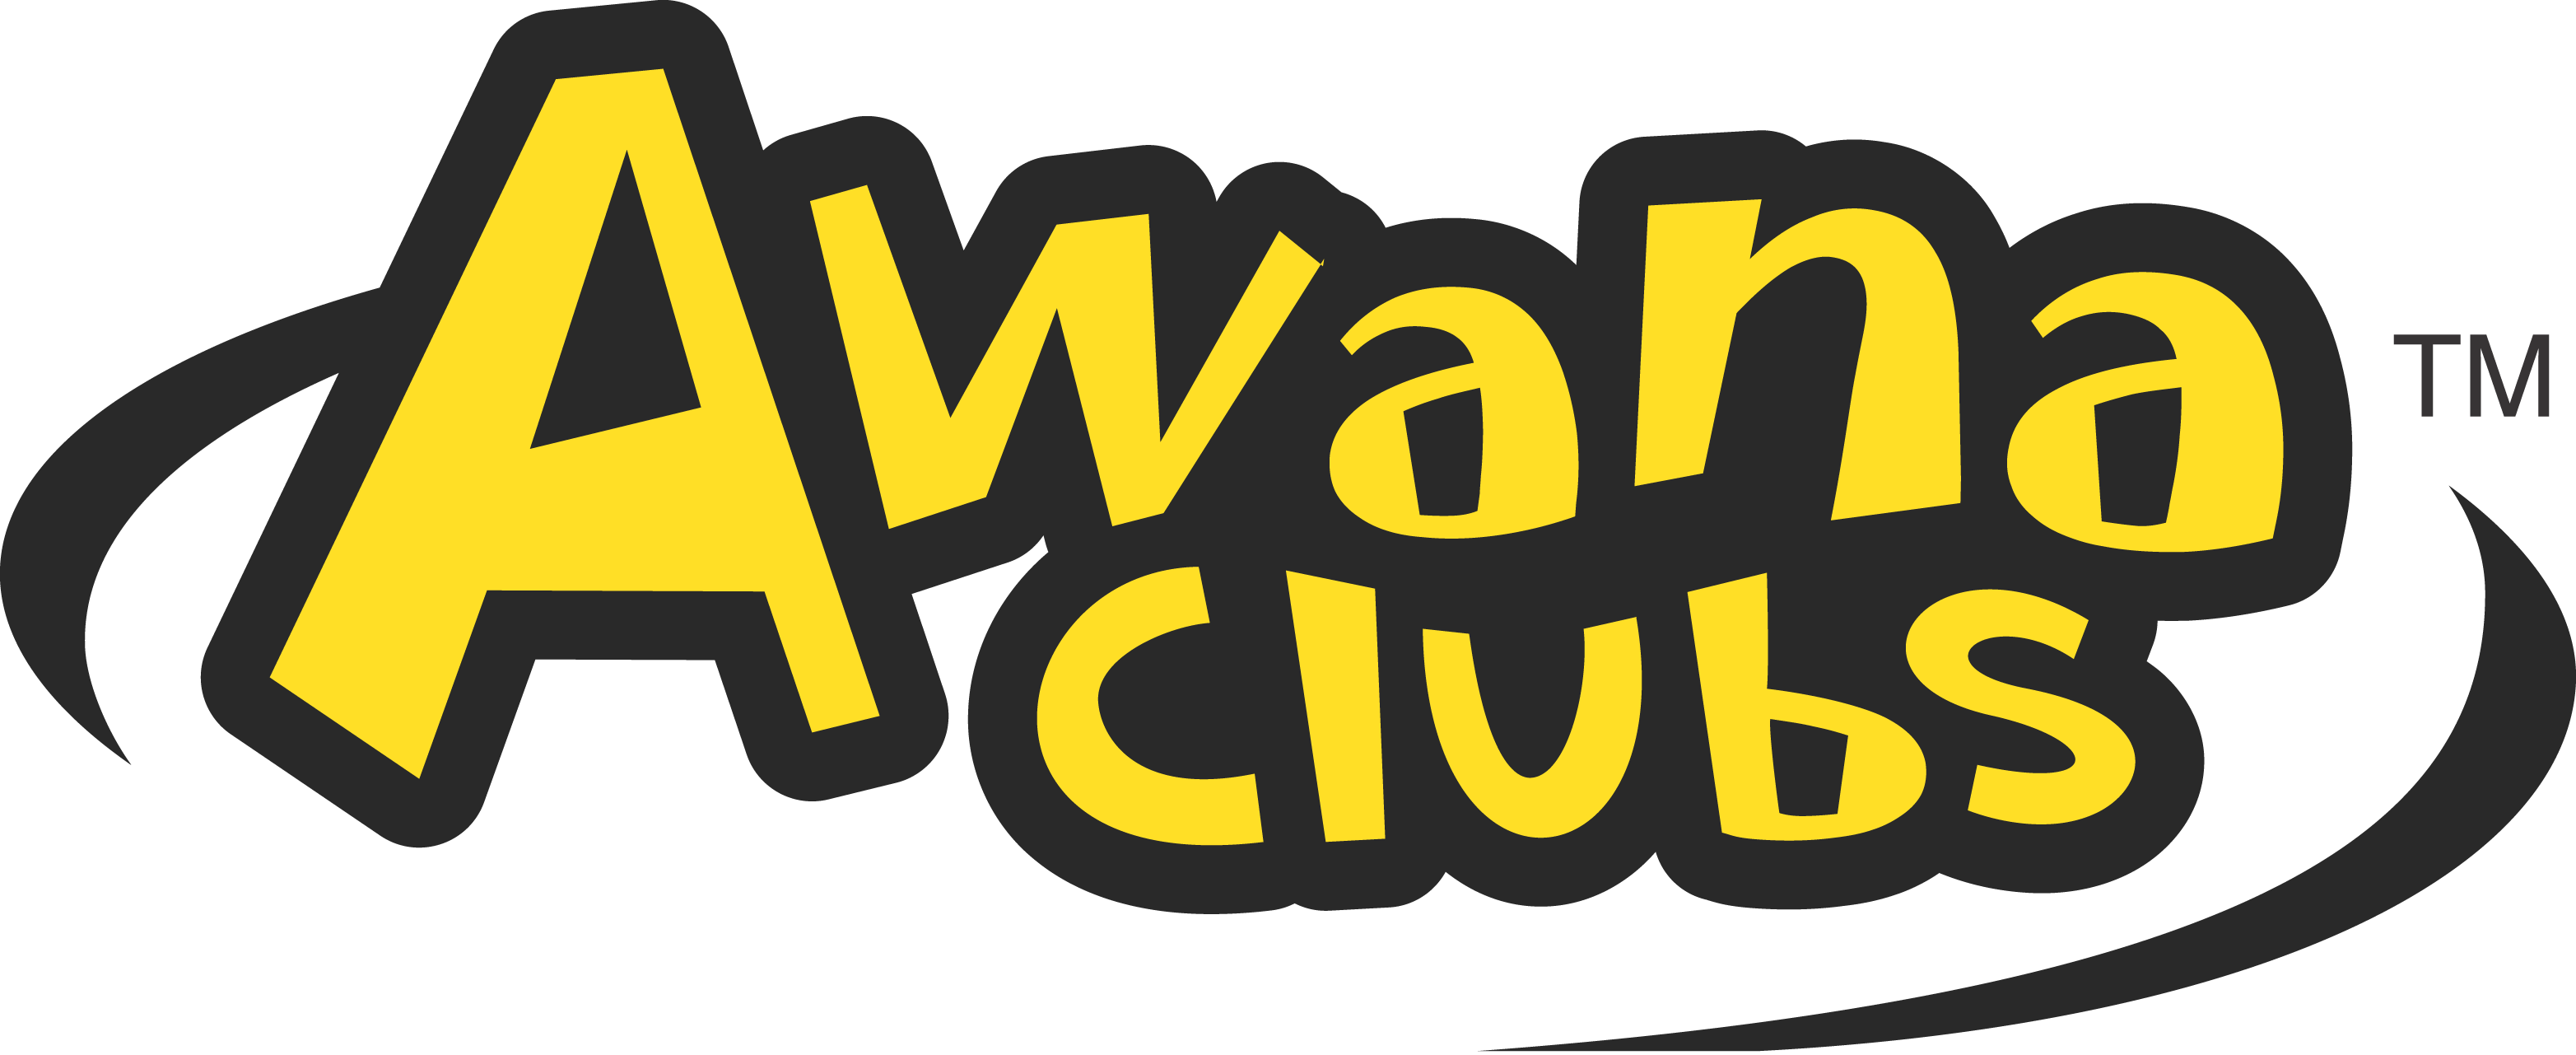 awana-logo